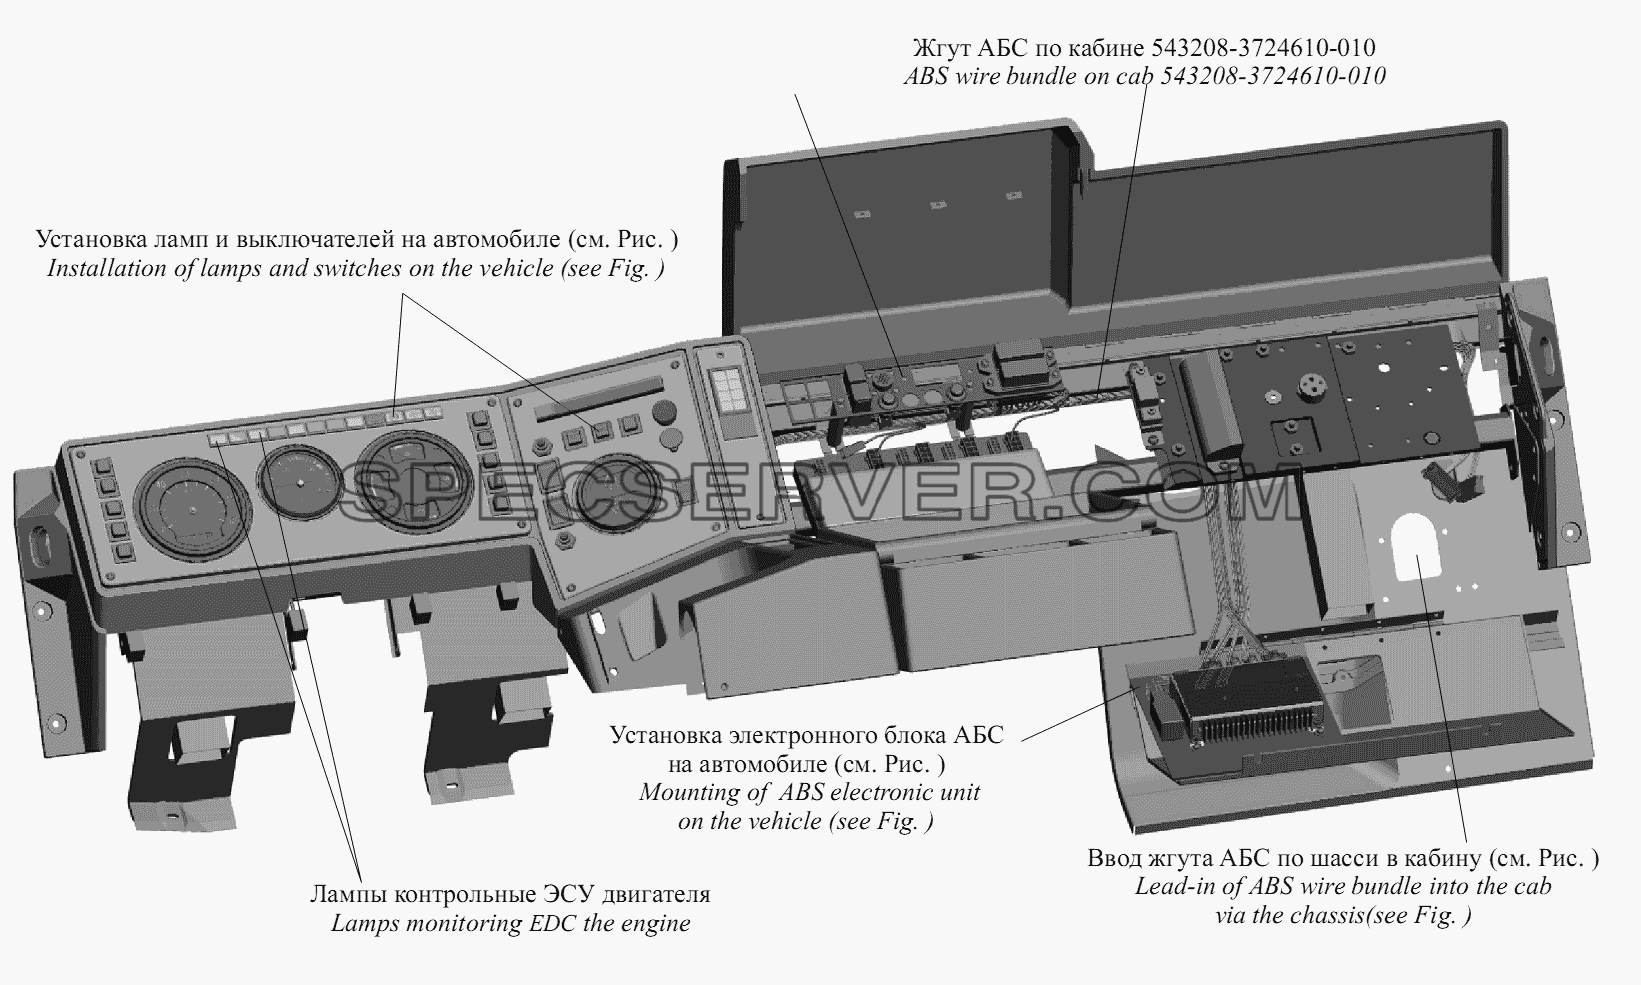 Расположение элементов системы АБС в кабине автомобиля 543208-3700120-020 для МАЗ-6422, 5432 (список запасных частей)